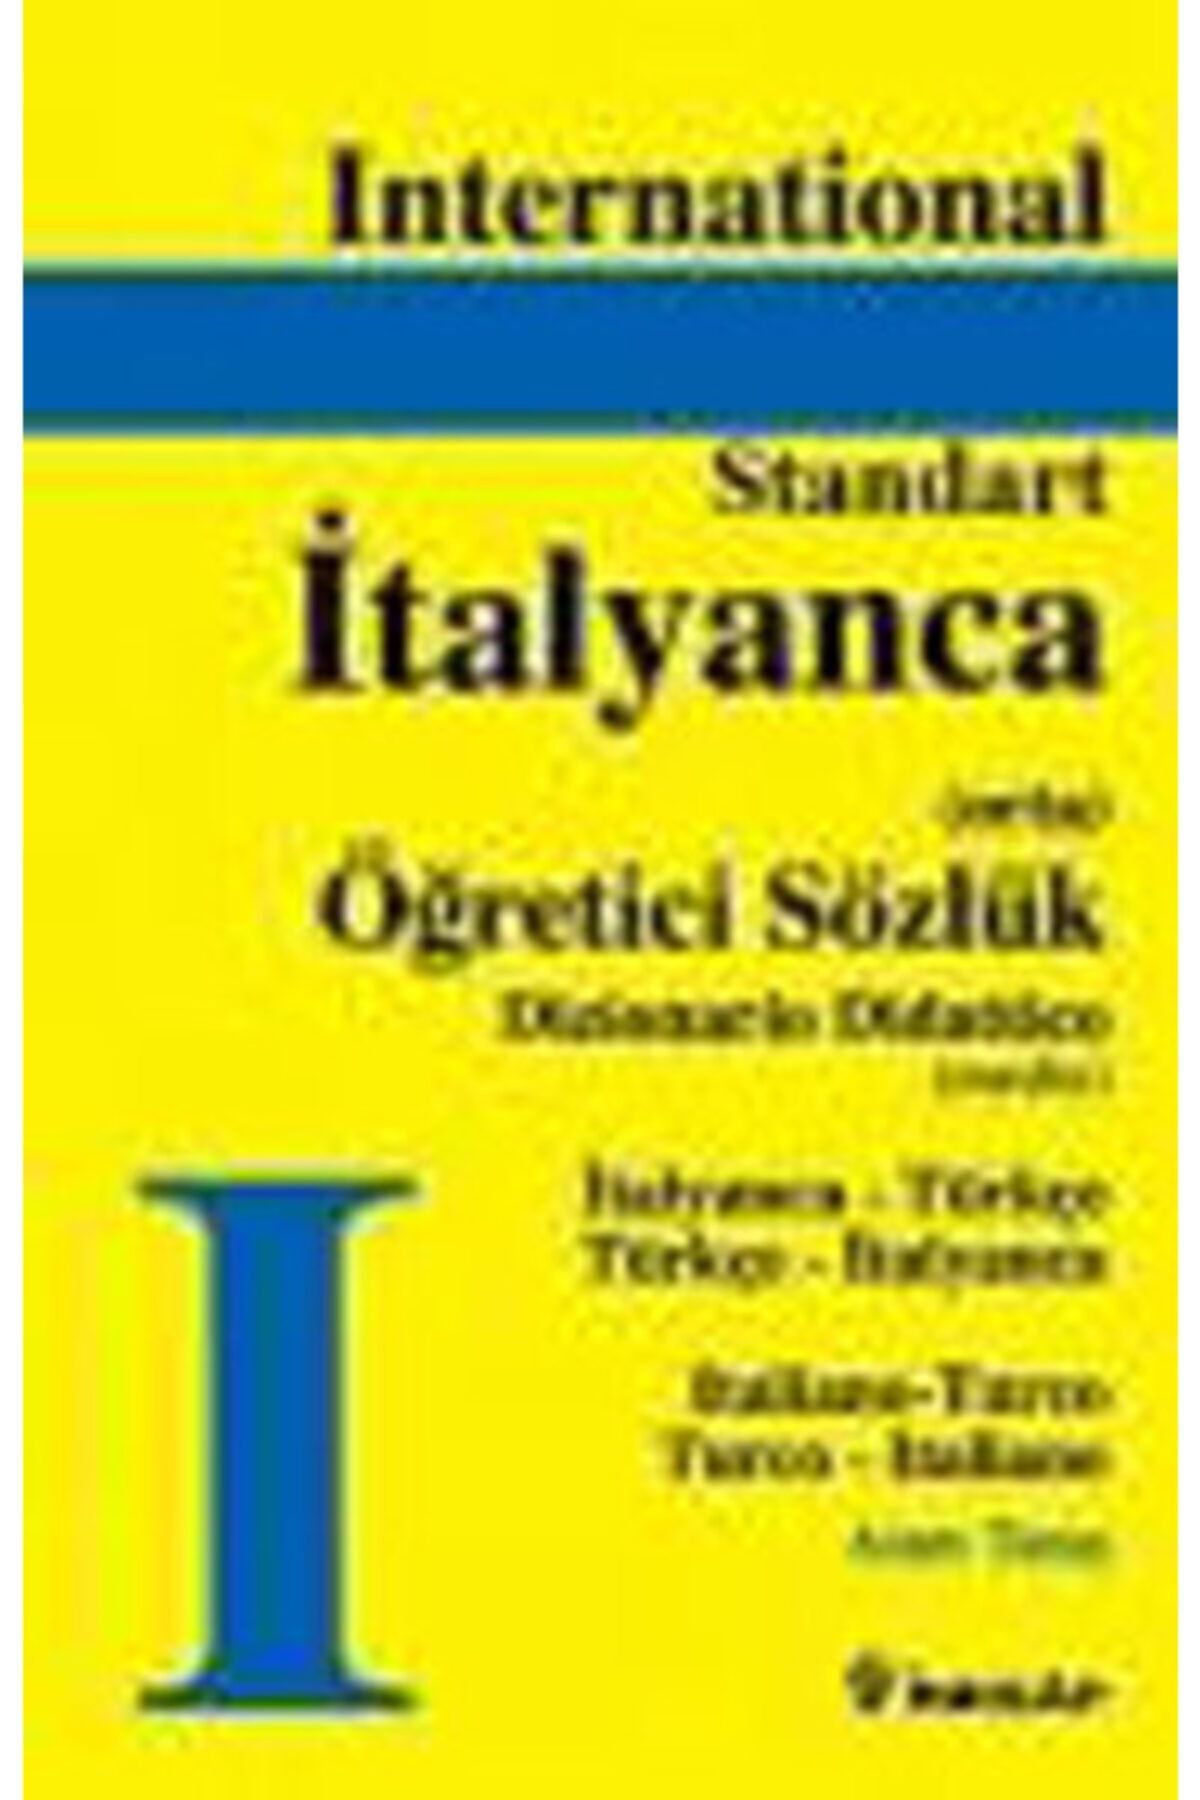 İnkılap Kitabevi Standart Italyanca Öğretici Sözlük